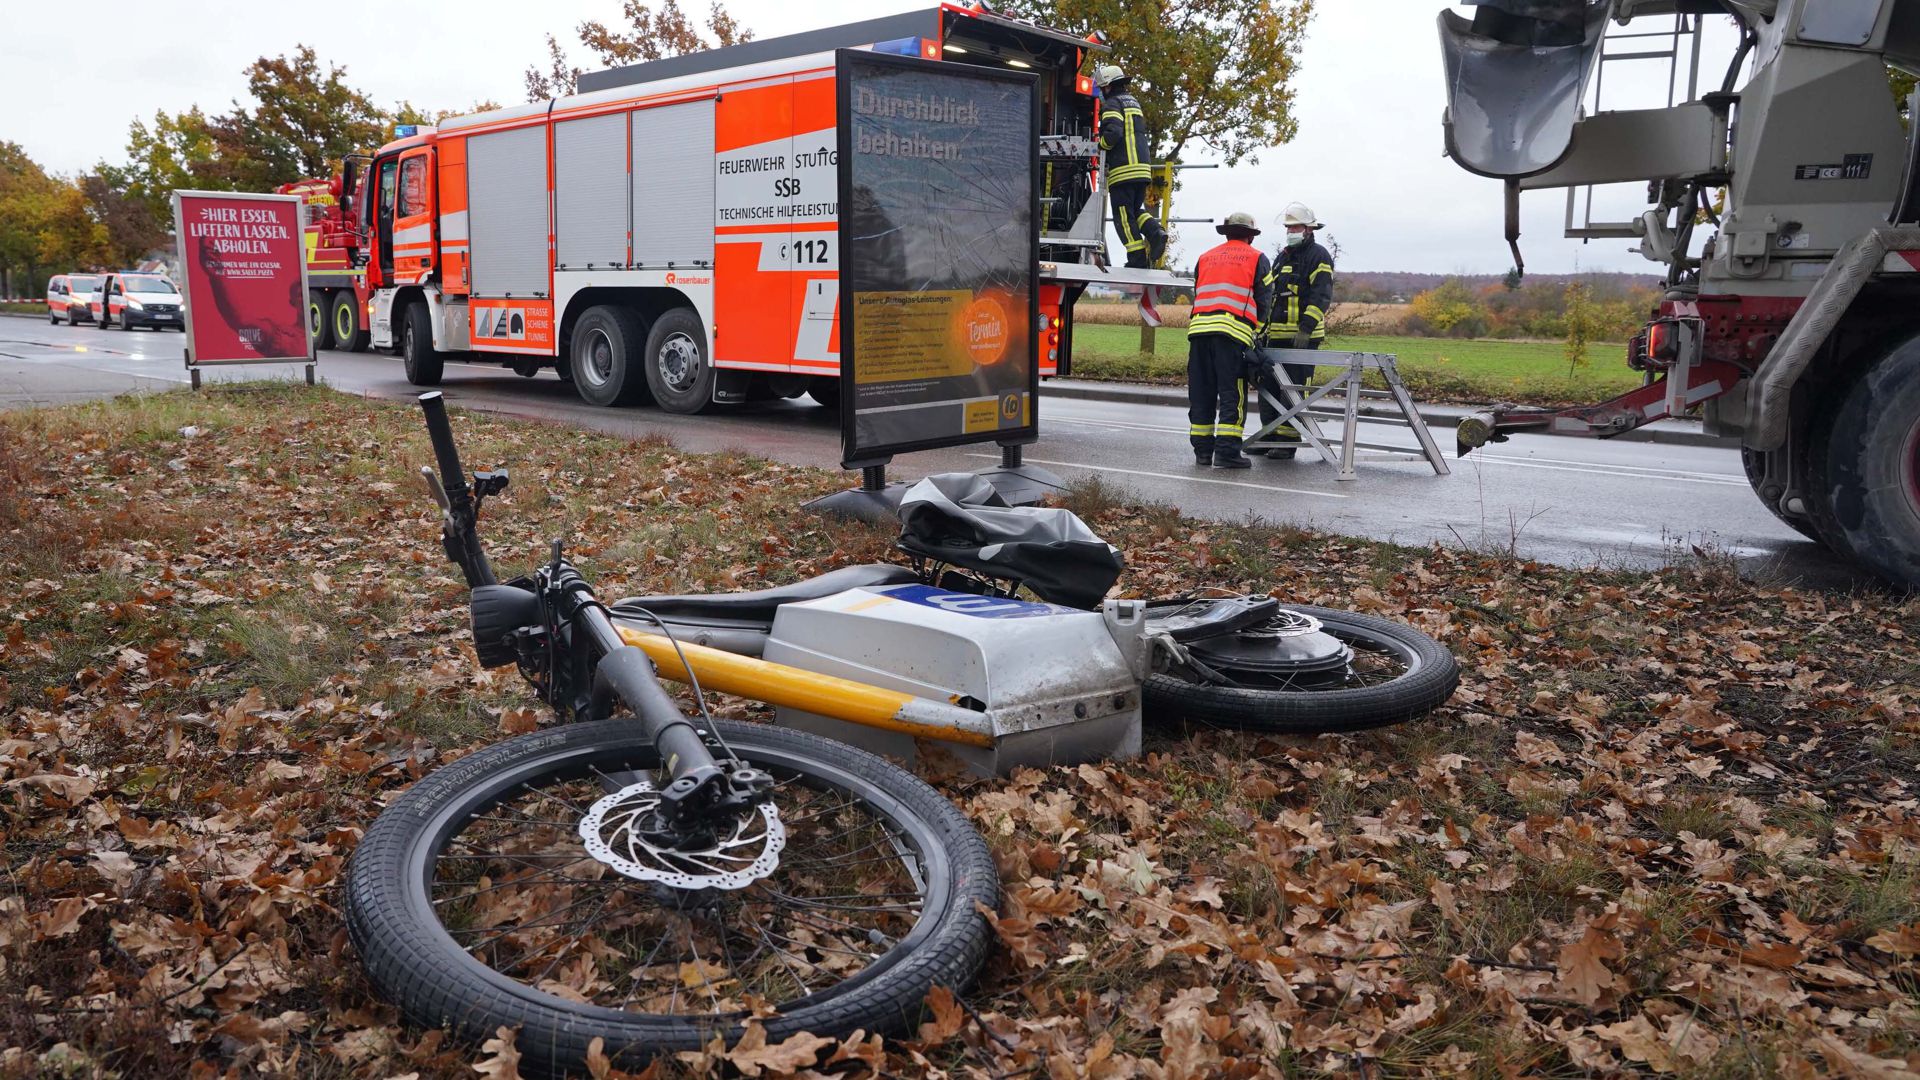 Ein E-Bike liegt an der Unfallstelle. Bei einem Unfall mit einem Lastwagen ist ein E-Bike-Fahrer tödlich verletzt worden. Der Lkw soll am Donnerstagmorgen in Stuttgart-Weilimdorf an einer Ampel rückwärts gefahren sein und dabei den E-Bike-Fahrer erfasst haben, sagte ein Polizeisprecher am Donnerstag. +++ dpa-Bildfunk +++